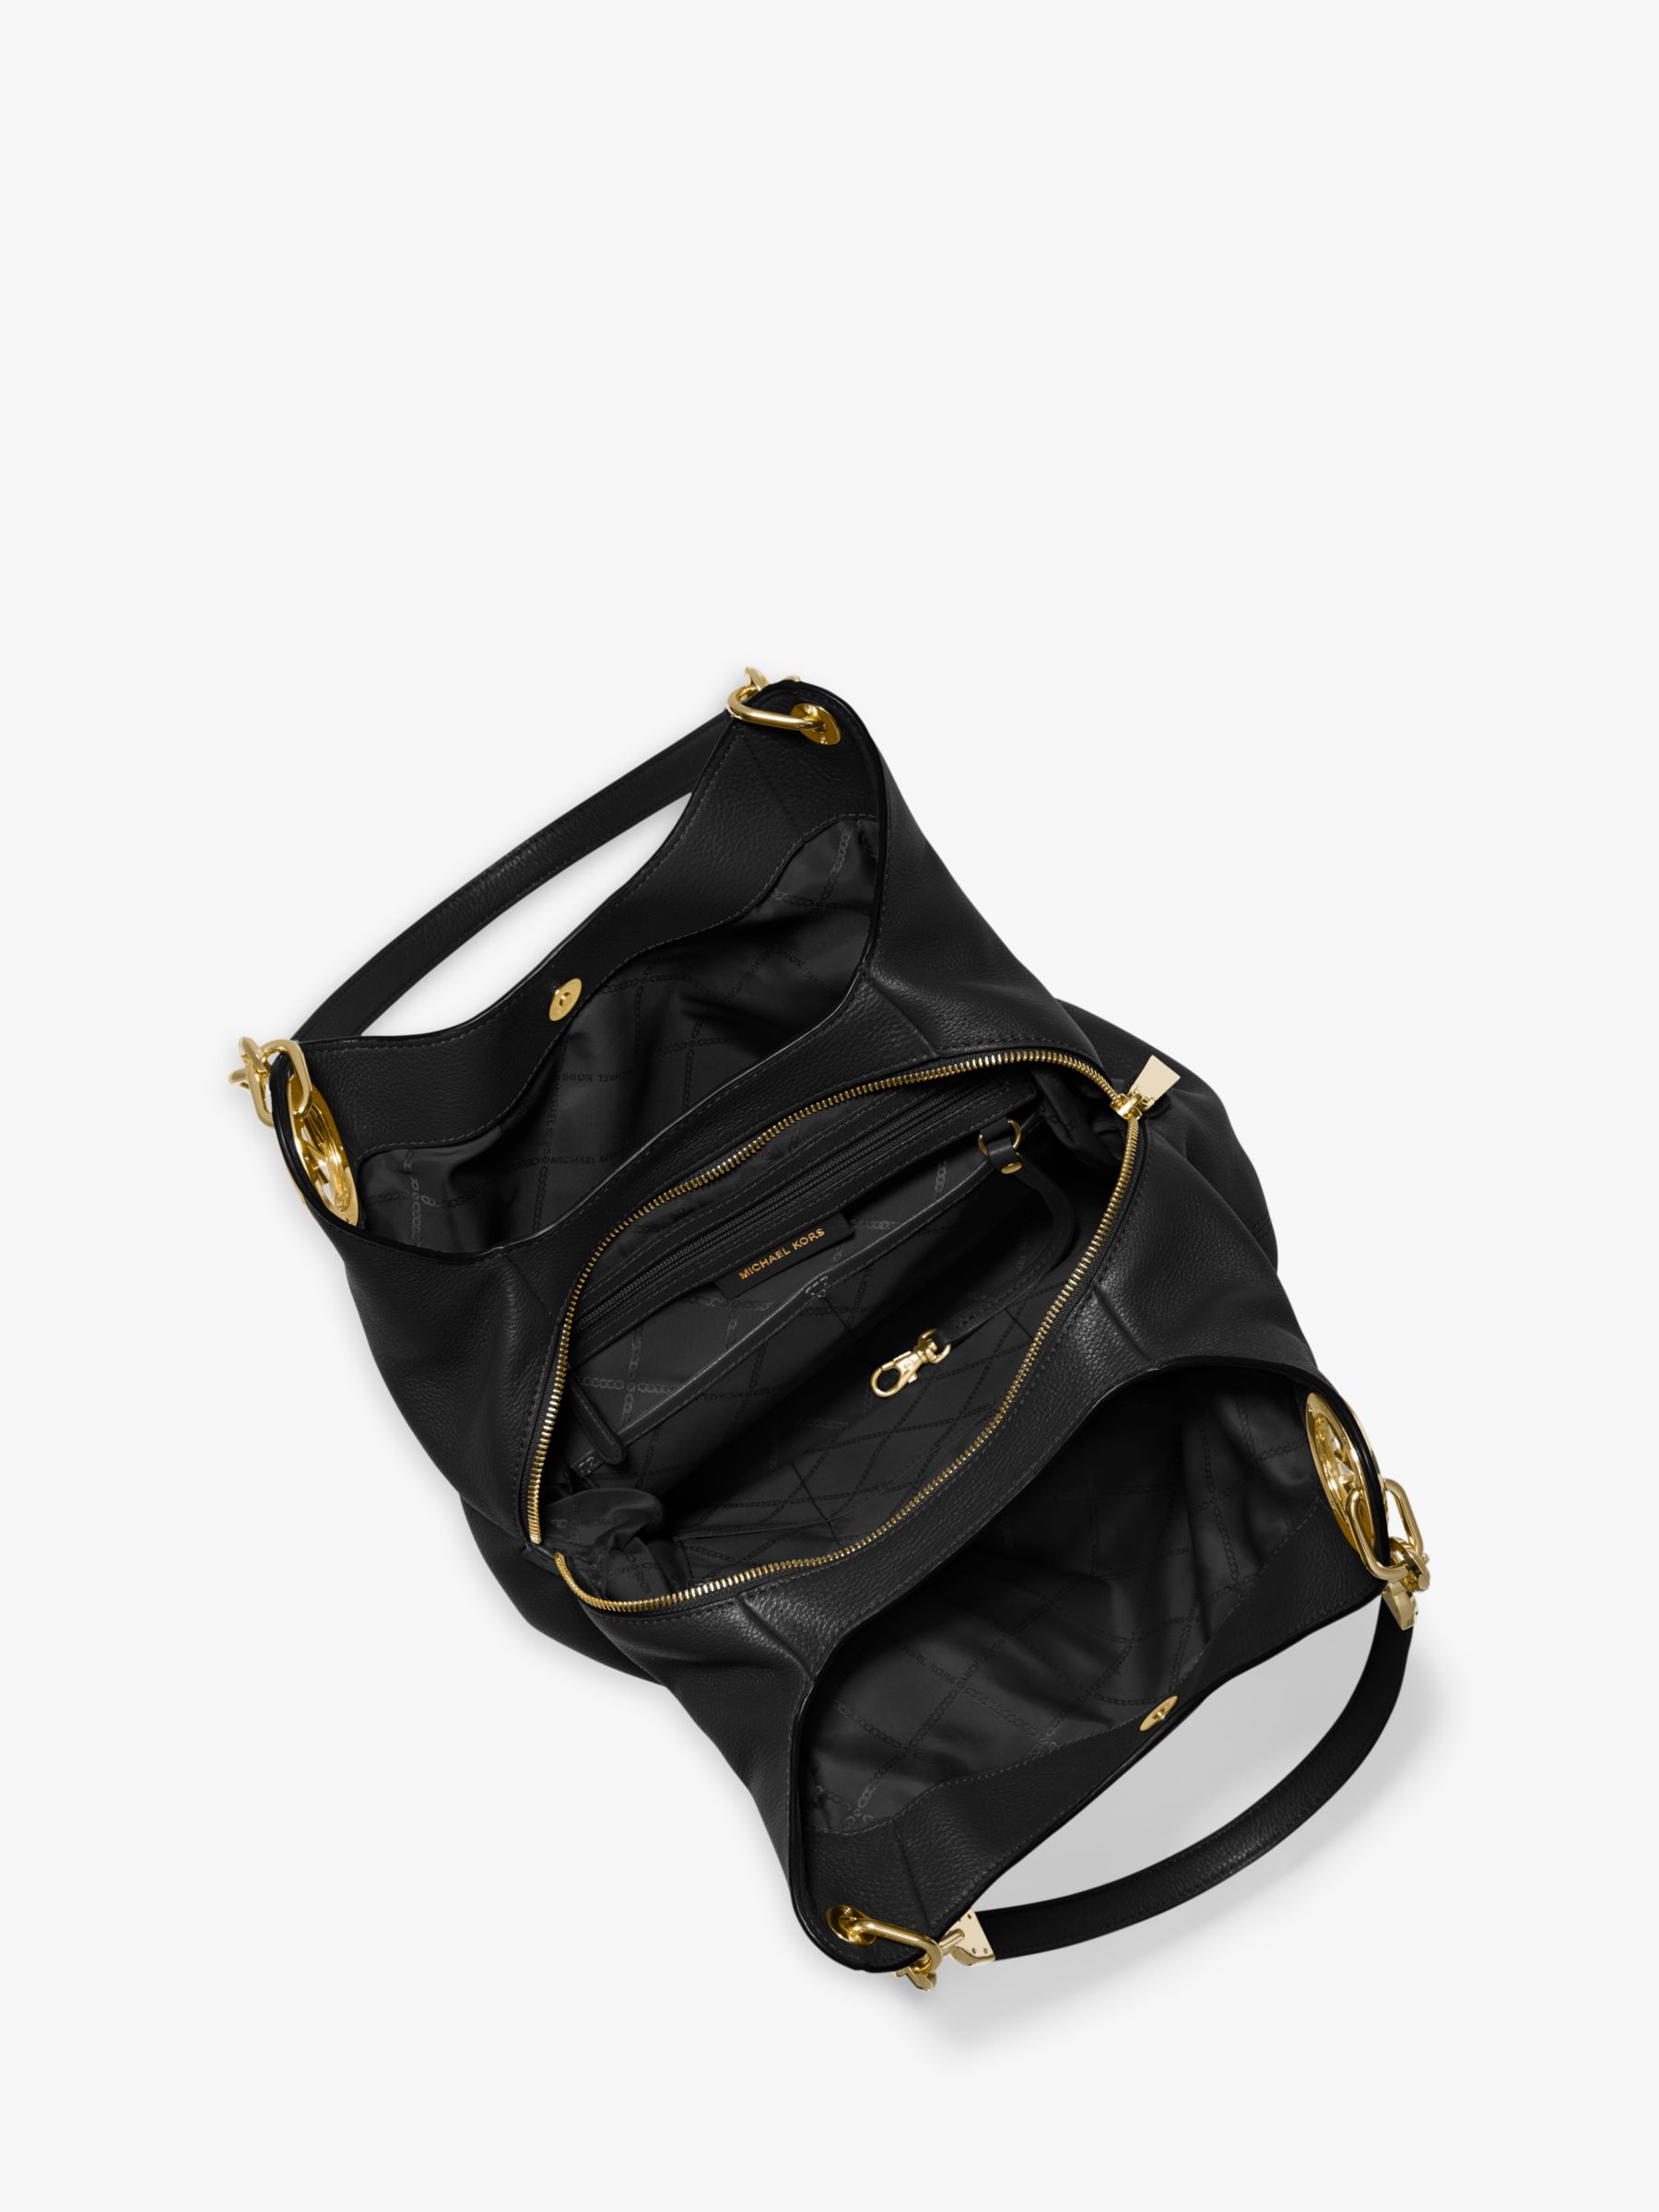 MICHAEL Michael Kors Lillie Large Leather Shoulder Bag, Black